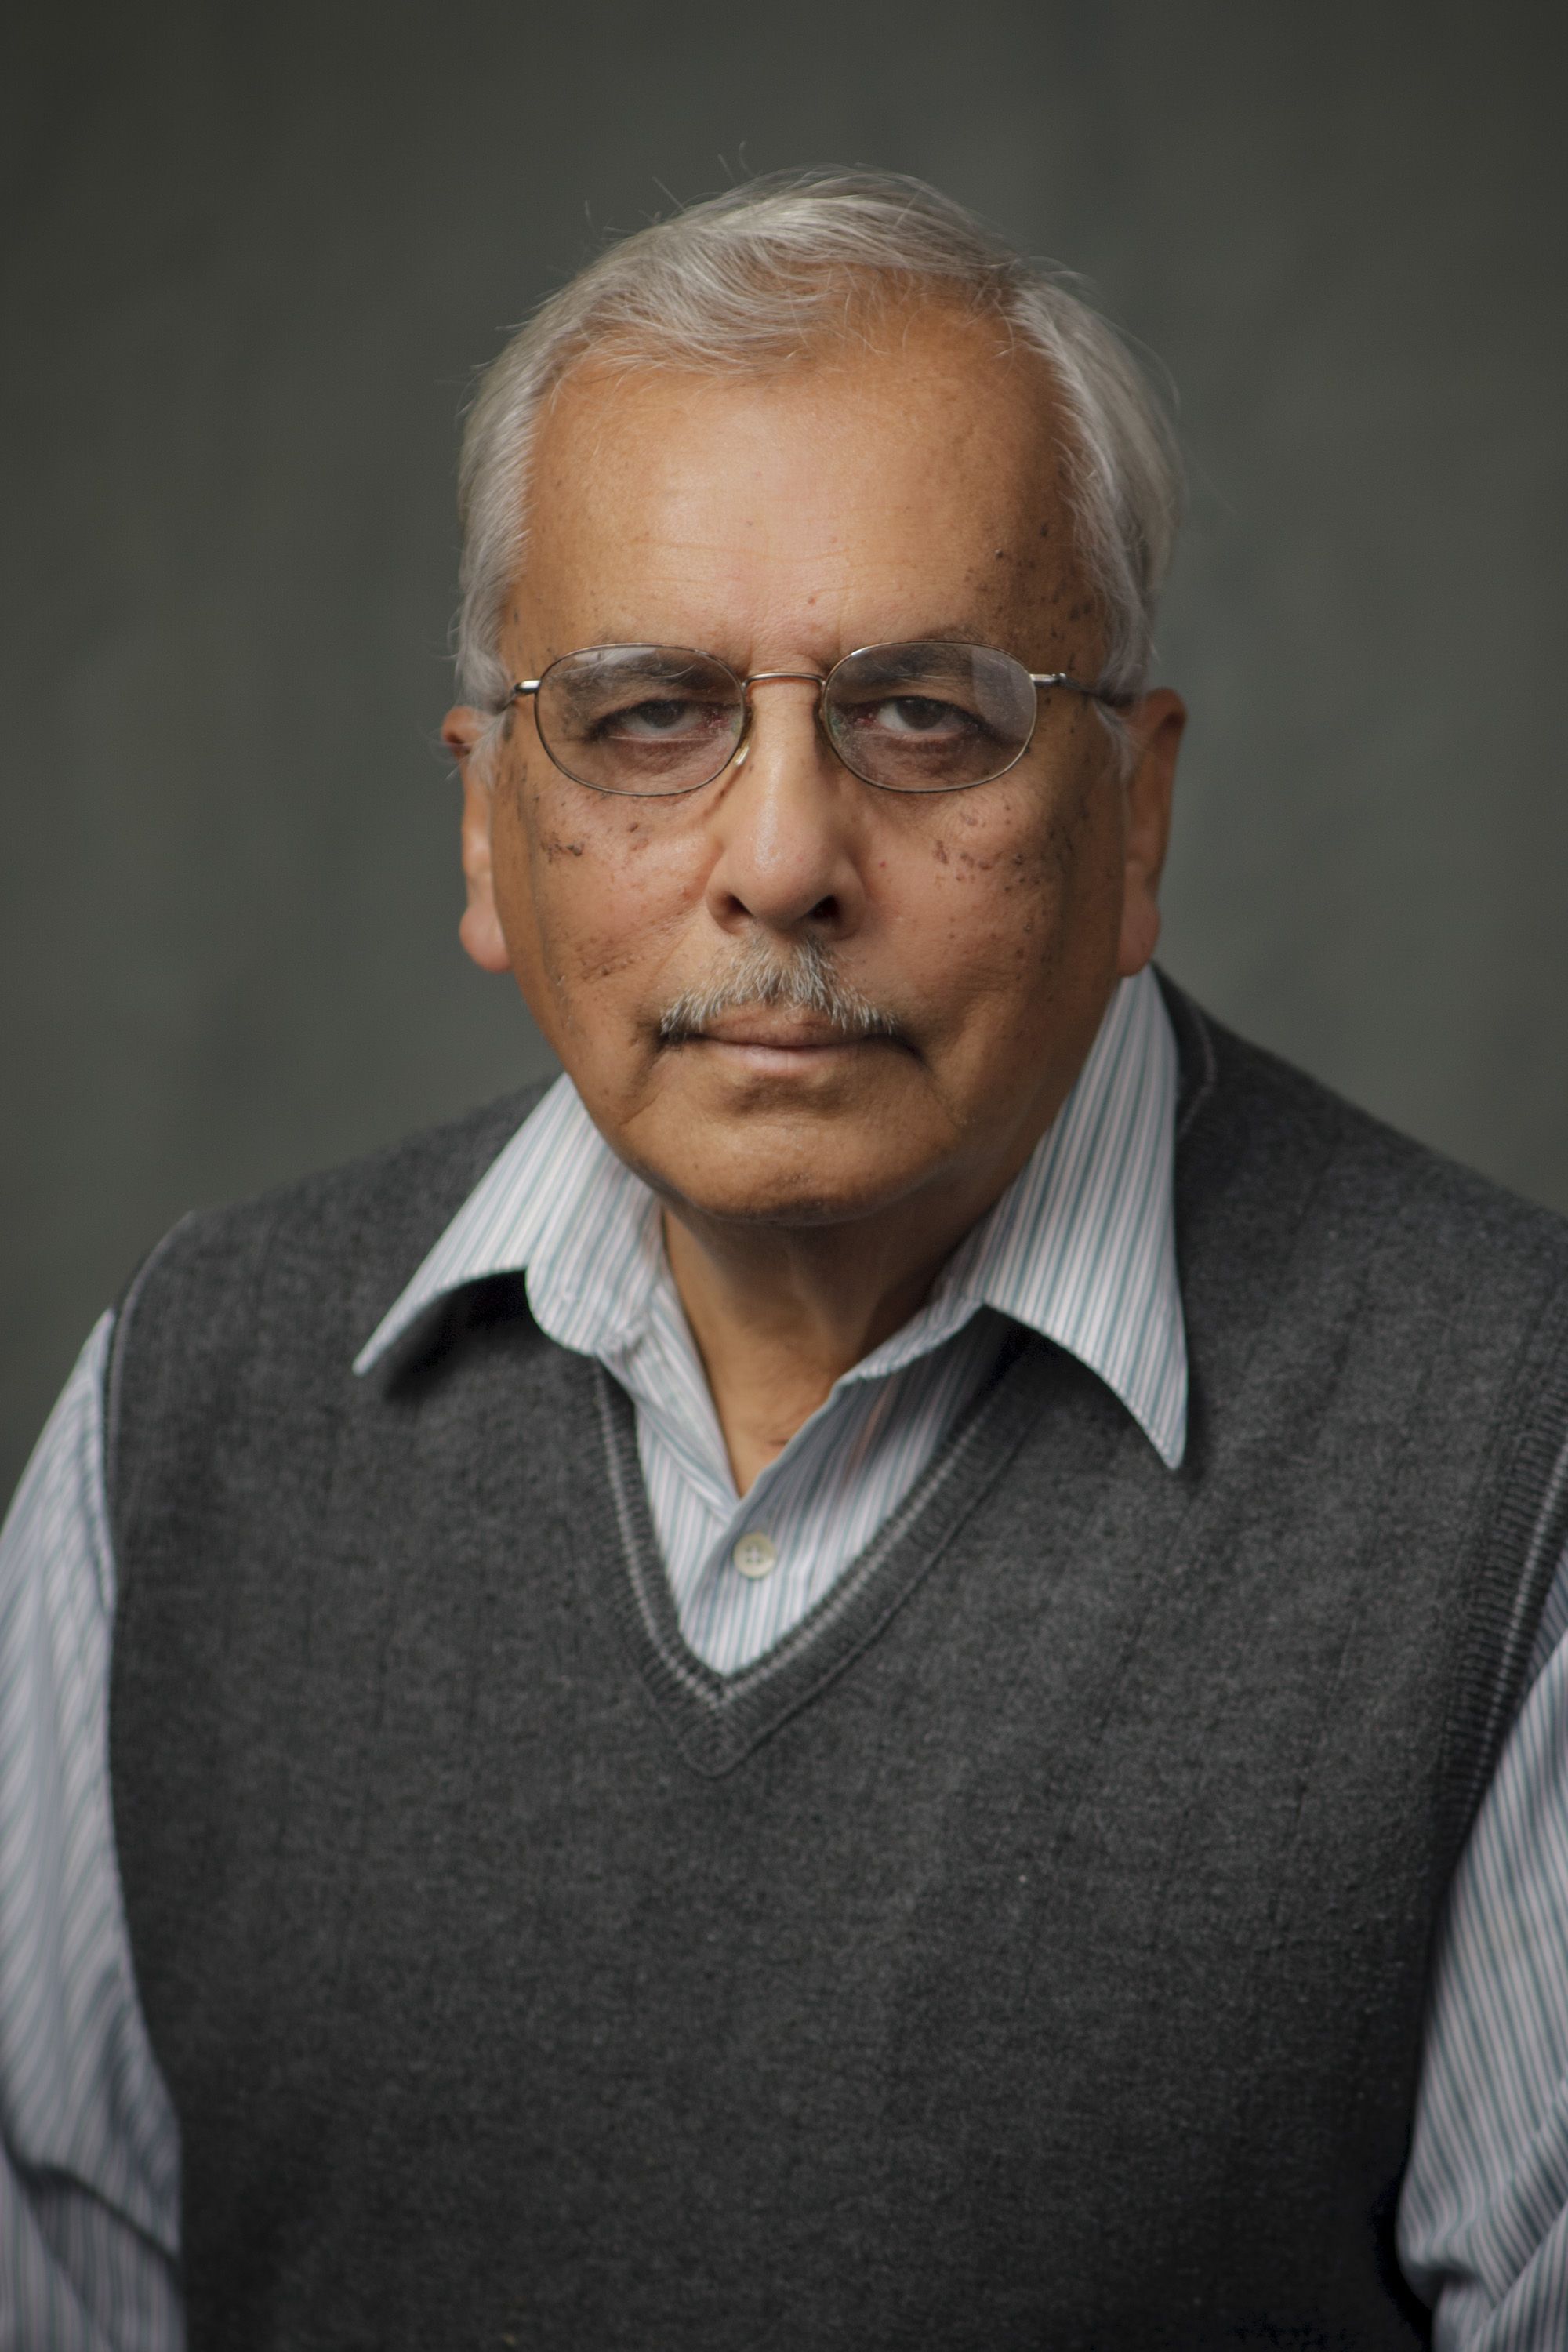 Dr. Shivaji Sircar